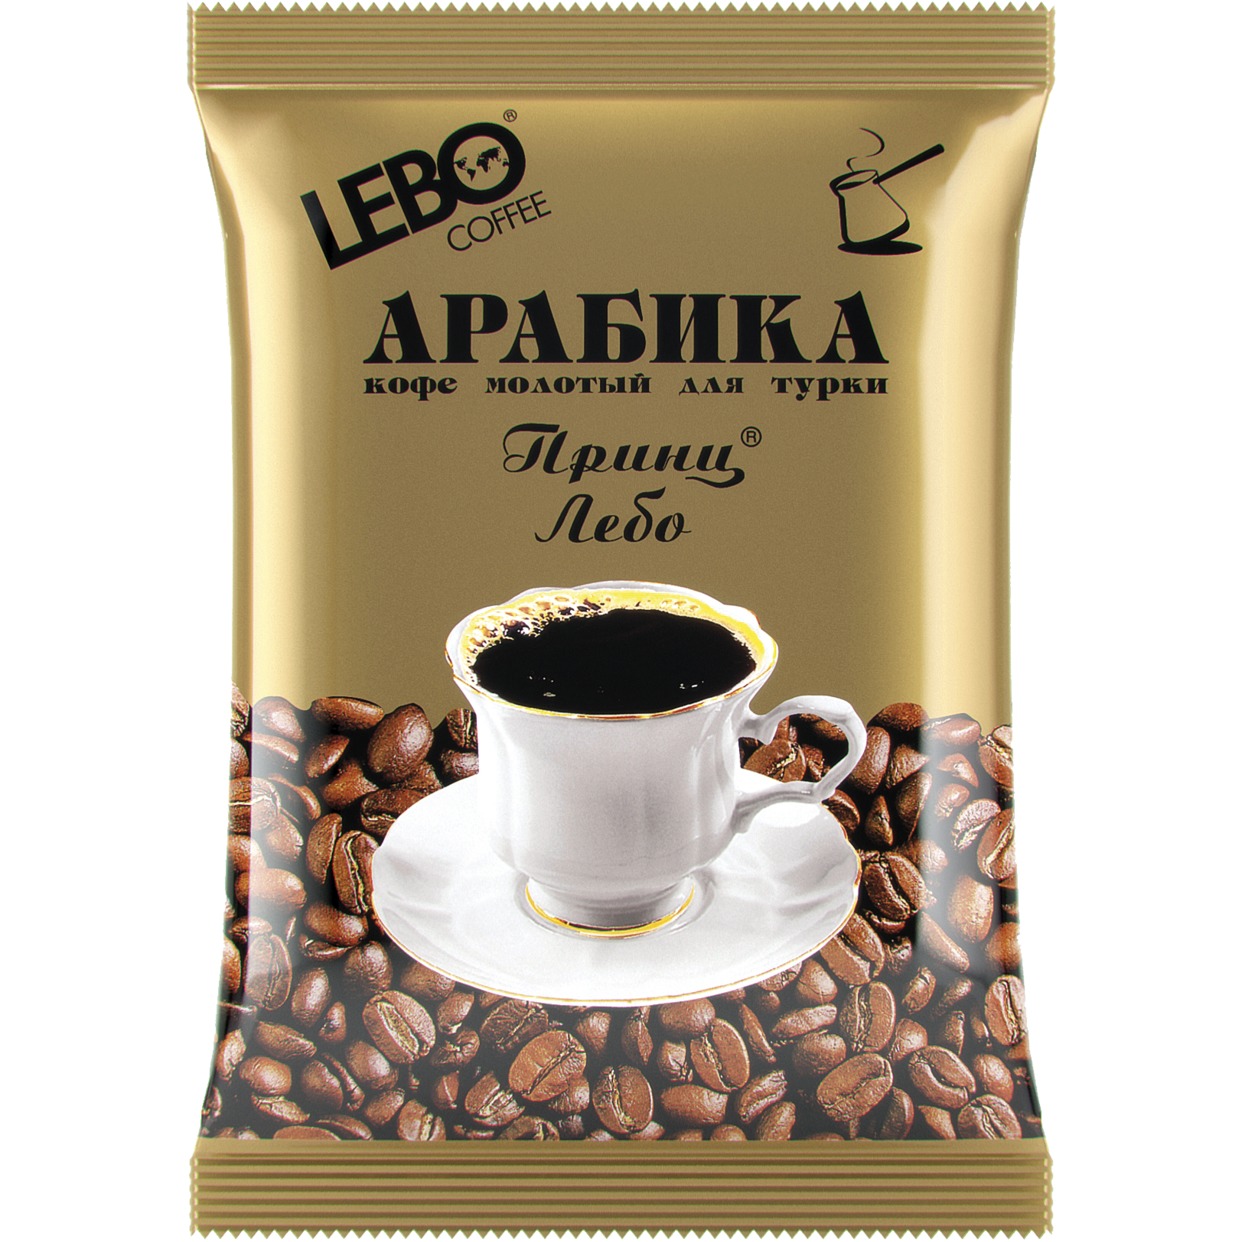 Лучшее кофе для турки отзывы. Арабика принц Лебо молотый. Кофе Арабика принц Лебо. Принц Лебо кофе молотый. Кофе молотый Арабика принц Лебо.